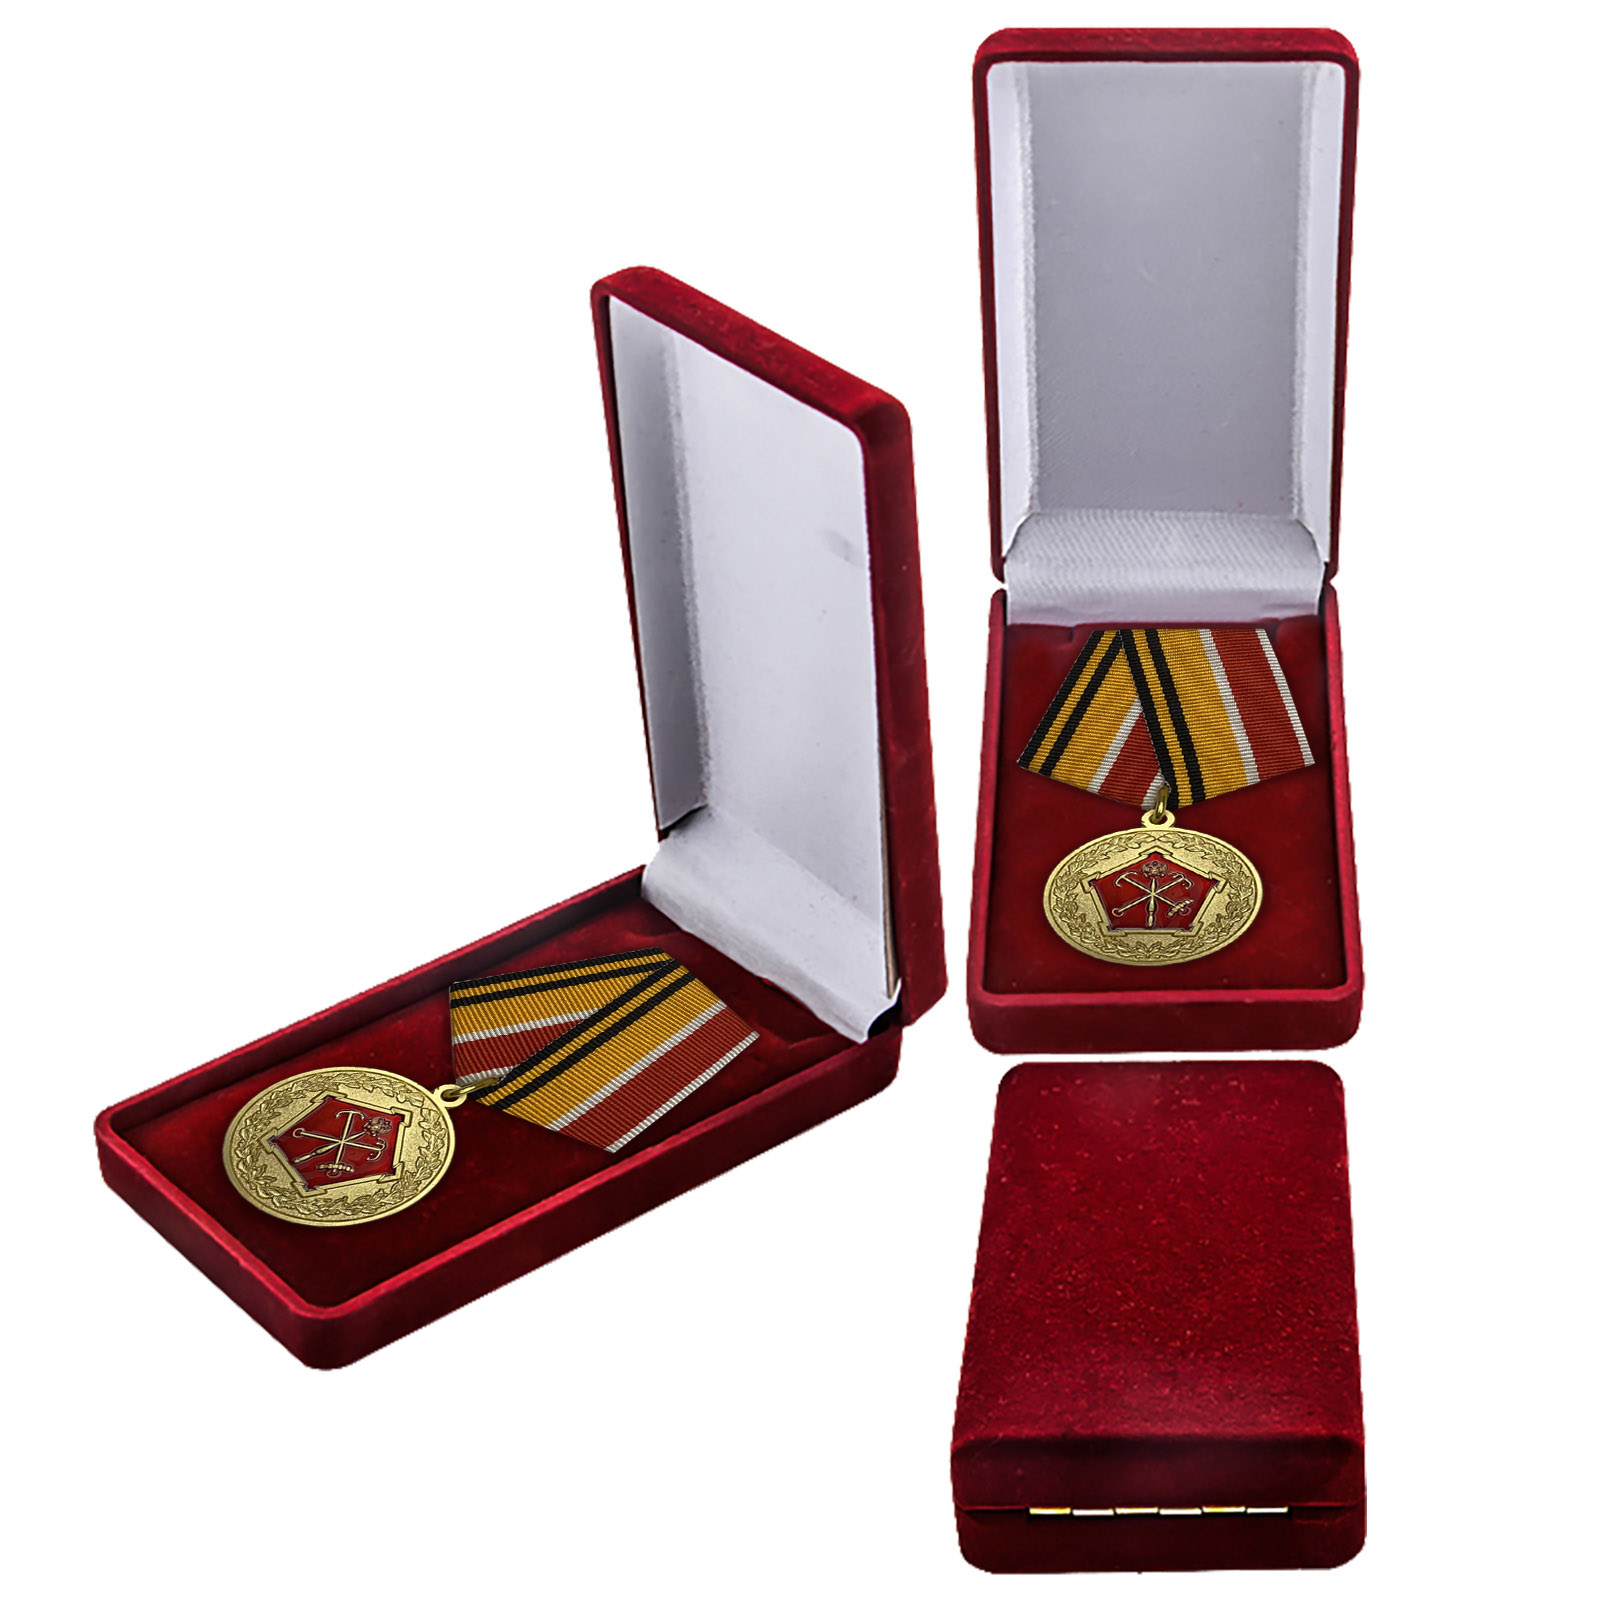 Купить юбилейную медаль 150 лет Западному военному округу онлайн